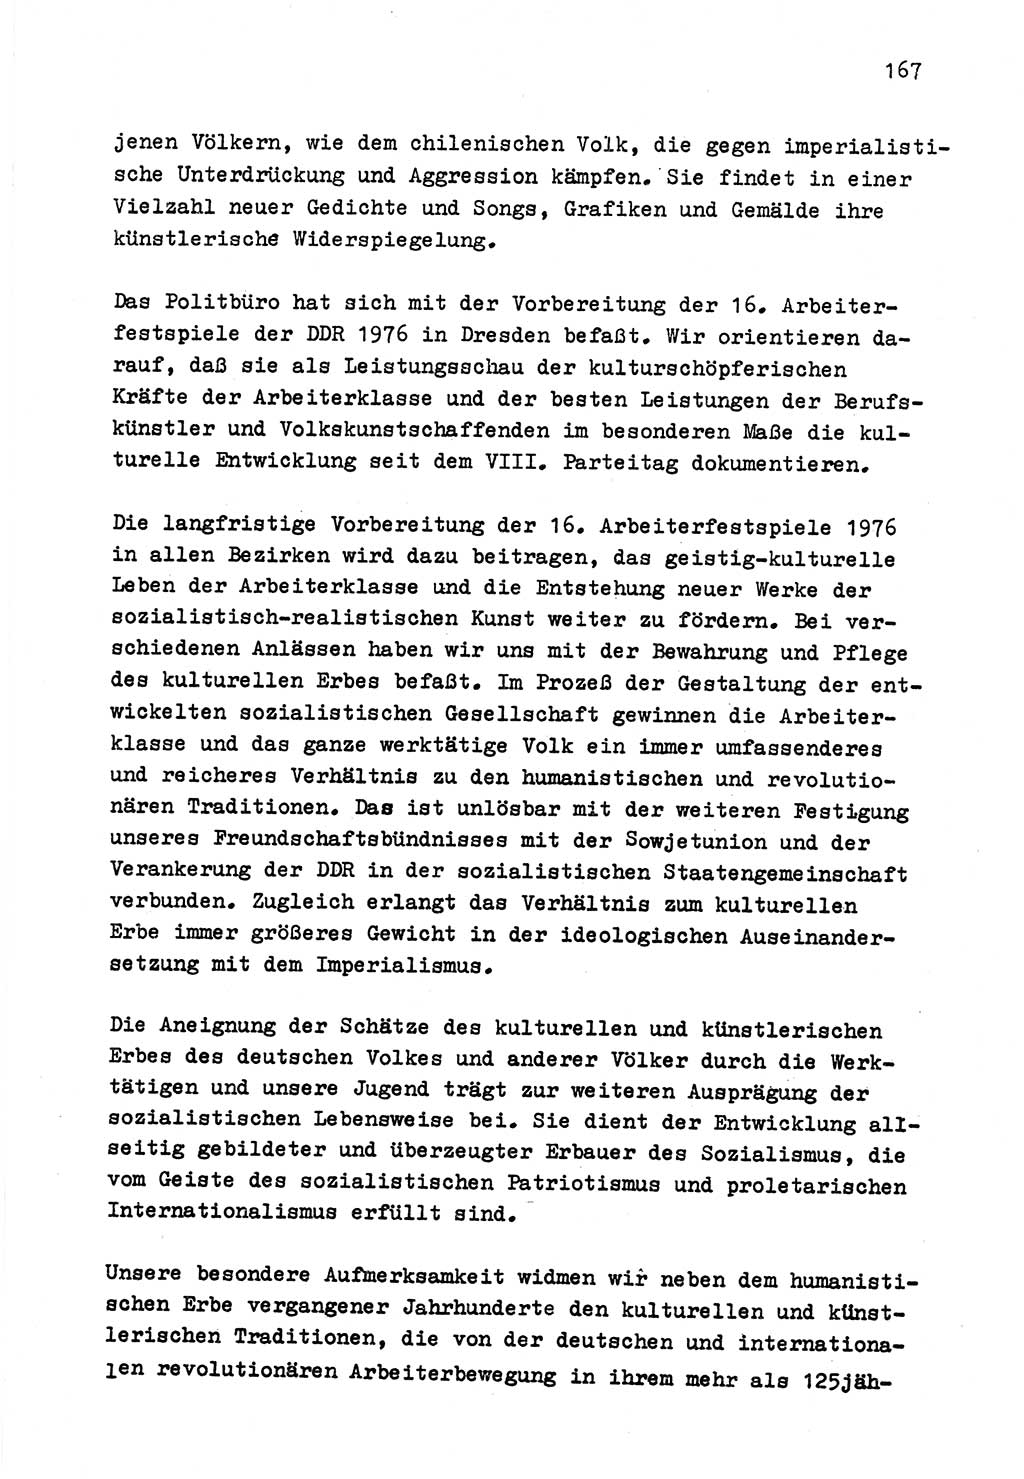 Zu Fragen der Parteiarbeit [Sozialistische Einheitspartei Deutschlands (SED) Deutsche Demokratische Republik (DDR)] 1979, Seite 167 (Fr. PA SED DDR 1979, S. 167)